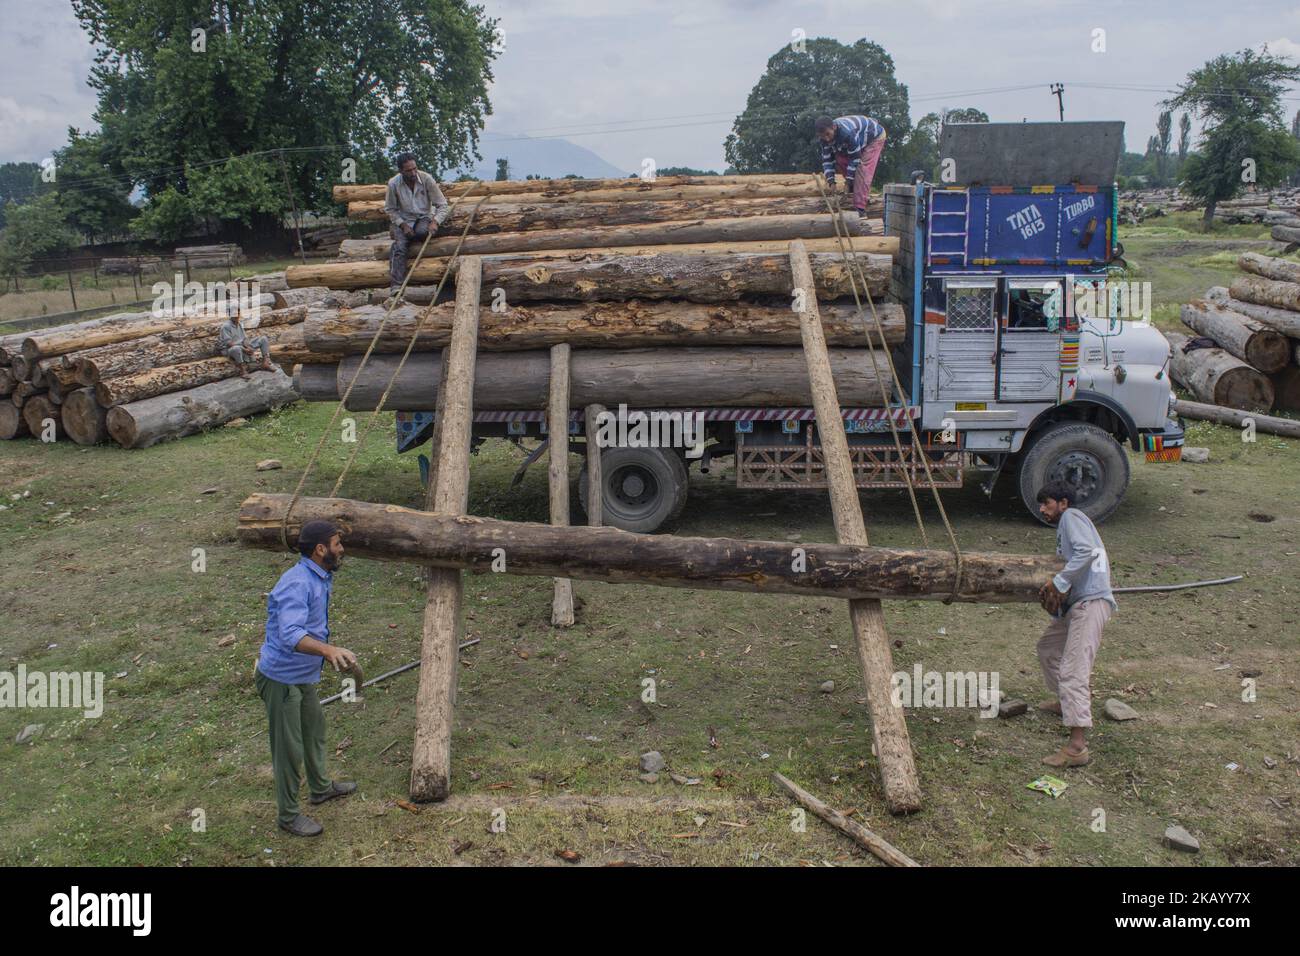 Los leñadores de Cachemira cargan troncos de árboles en un camión maderero en Timber Transport Range el 5 de julio de 2018 en Srinagar, la capital de verano de la Cachemira administrada por la India. El trabajo de leñadores en Cachemira sigue siendo en su mayor parte insuficiente y no está asegurado contra accidentes. La mayoría son empleados como trabajadores ocasionales en el área de transporte de madera en Srinagar. Debido a la naturaleza de su trabajo, los leñadores tienen una marcha inusual ya que sufren de trastornos ortopédicos, especialmente dolor de espalda crónico. (Foto de Kabli Yawar/NurPhoto) (Foto de Kabli Yawar/NurPhoto) Foto de stock